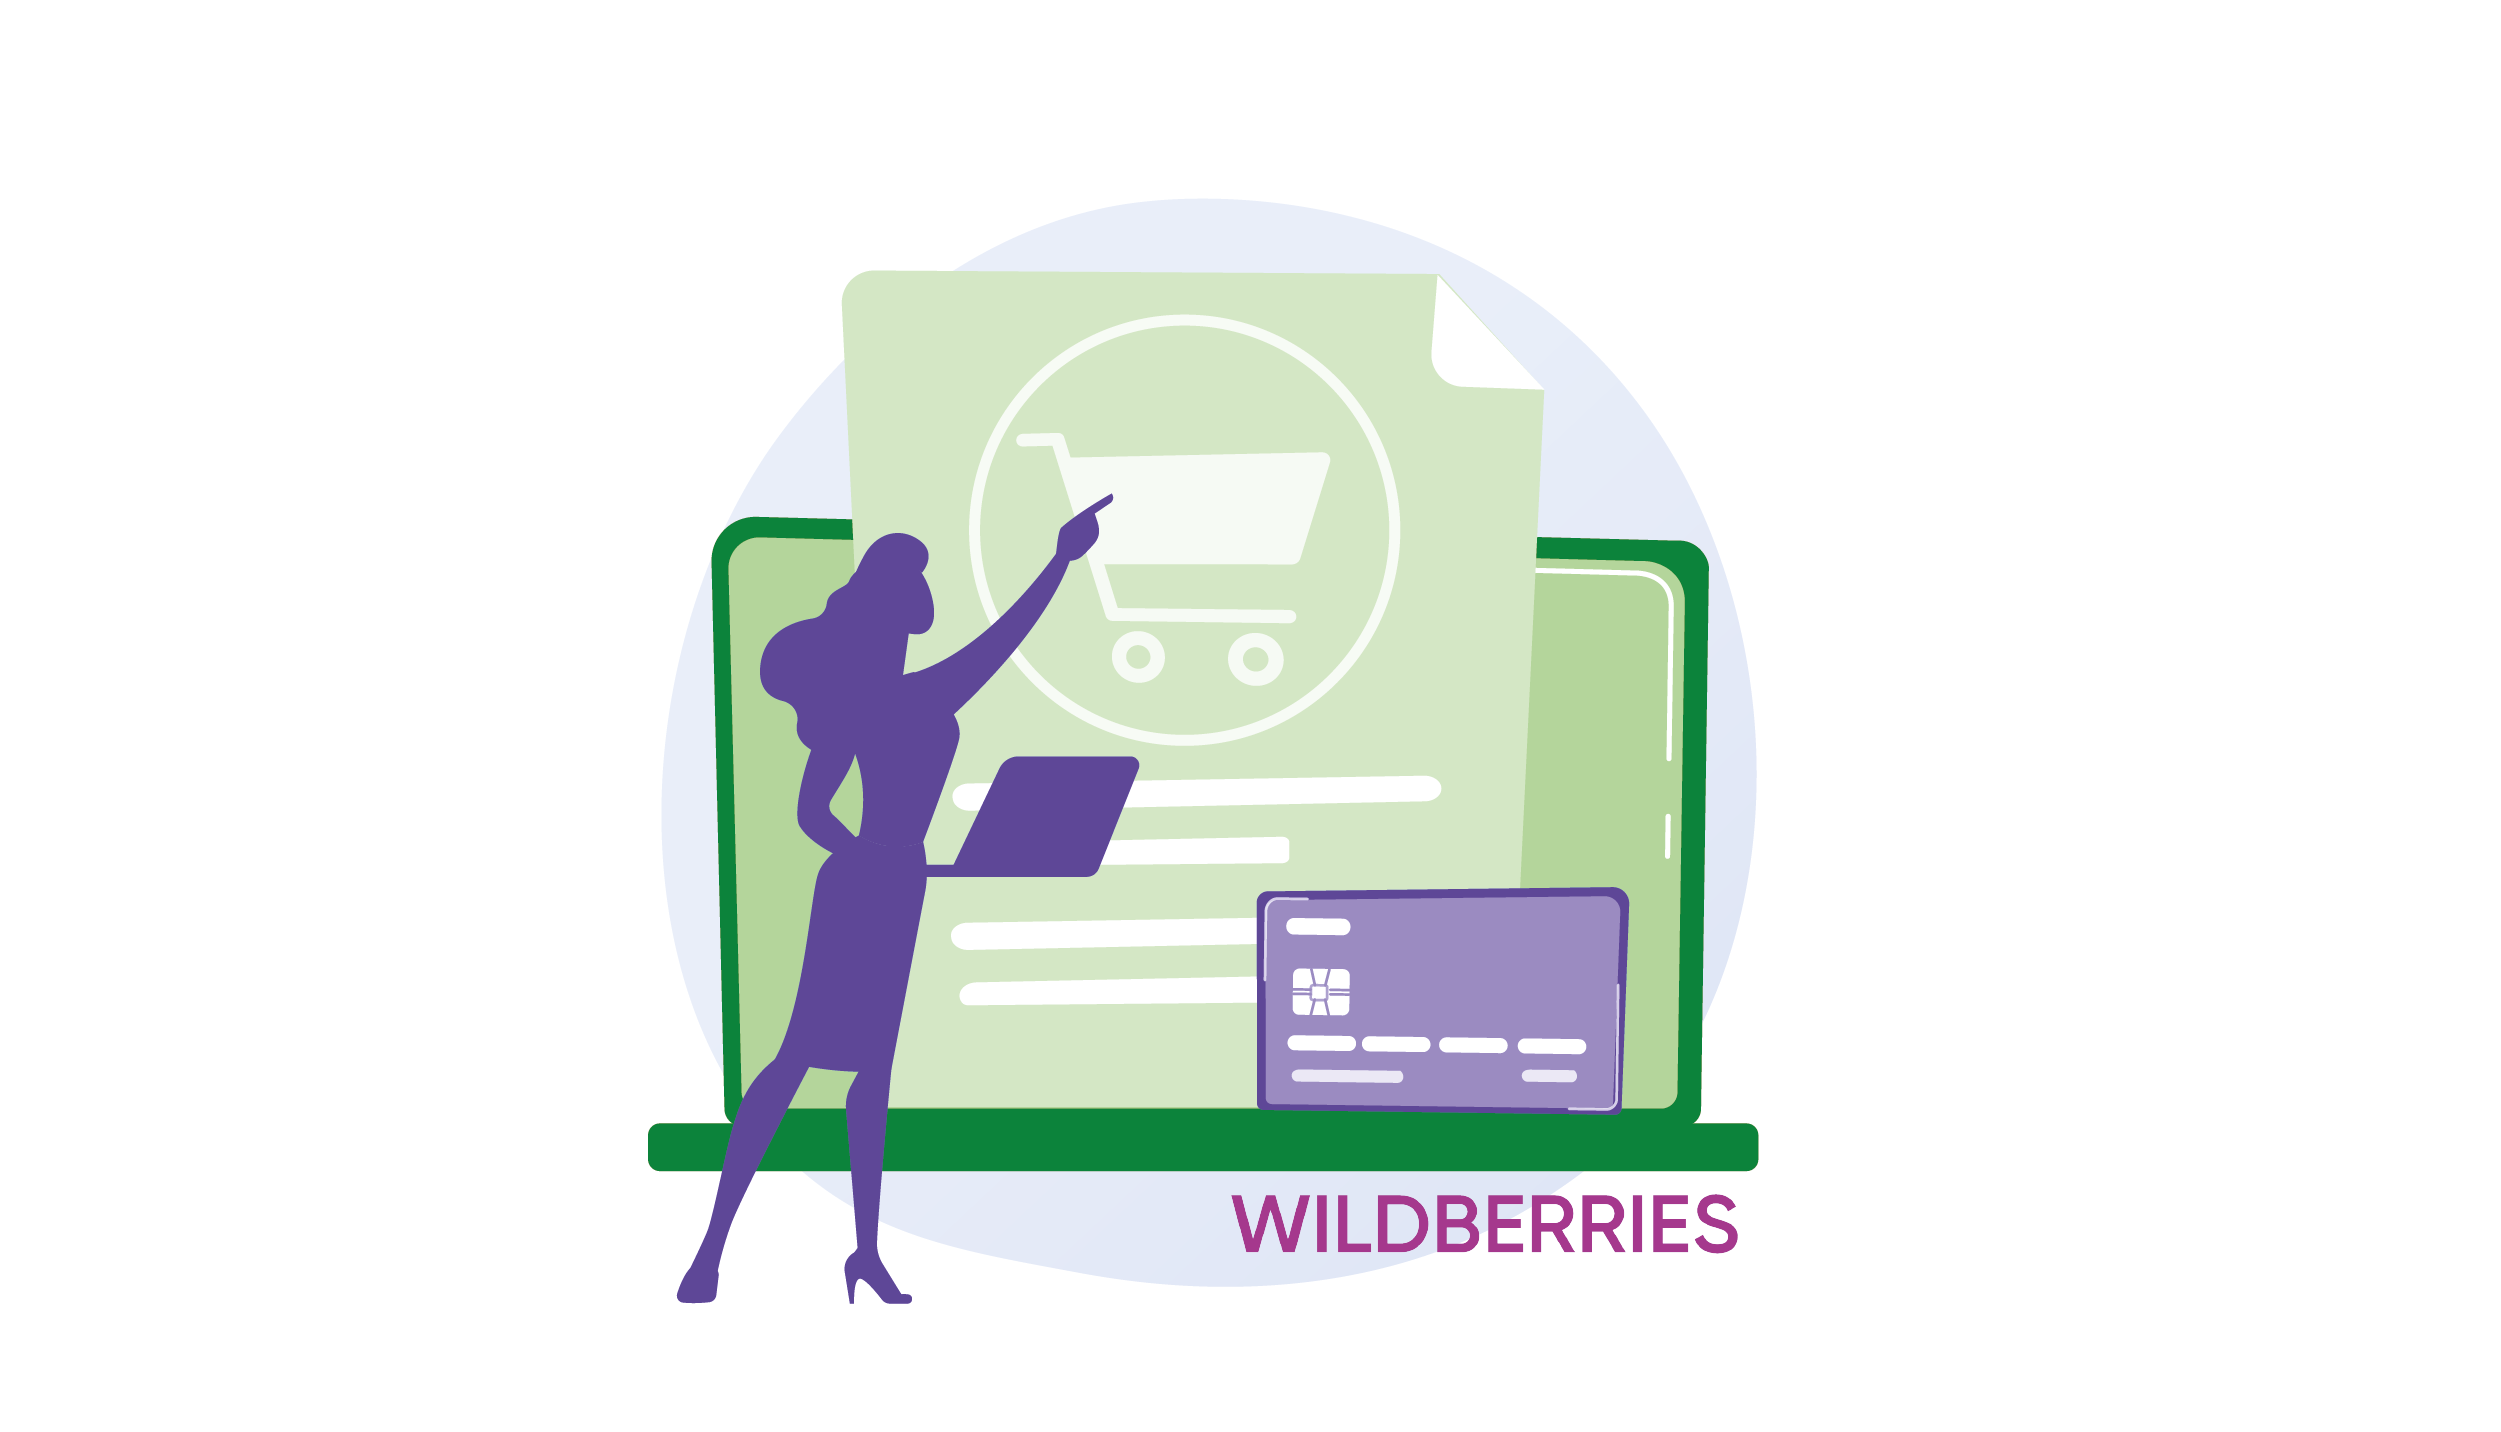 Карточка товара Wildberries: требования маркетплейса к фото, оформлению и контенту